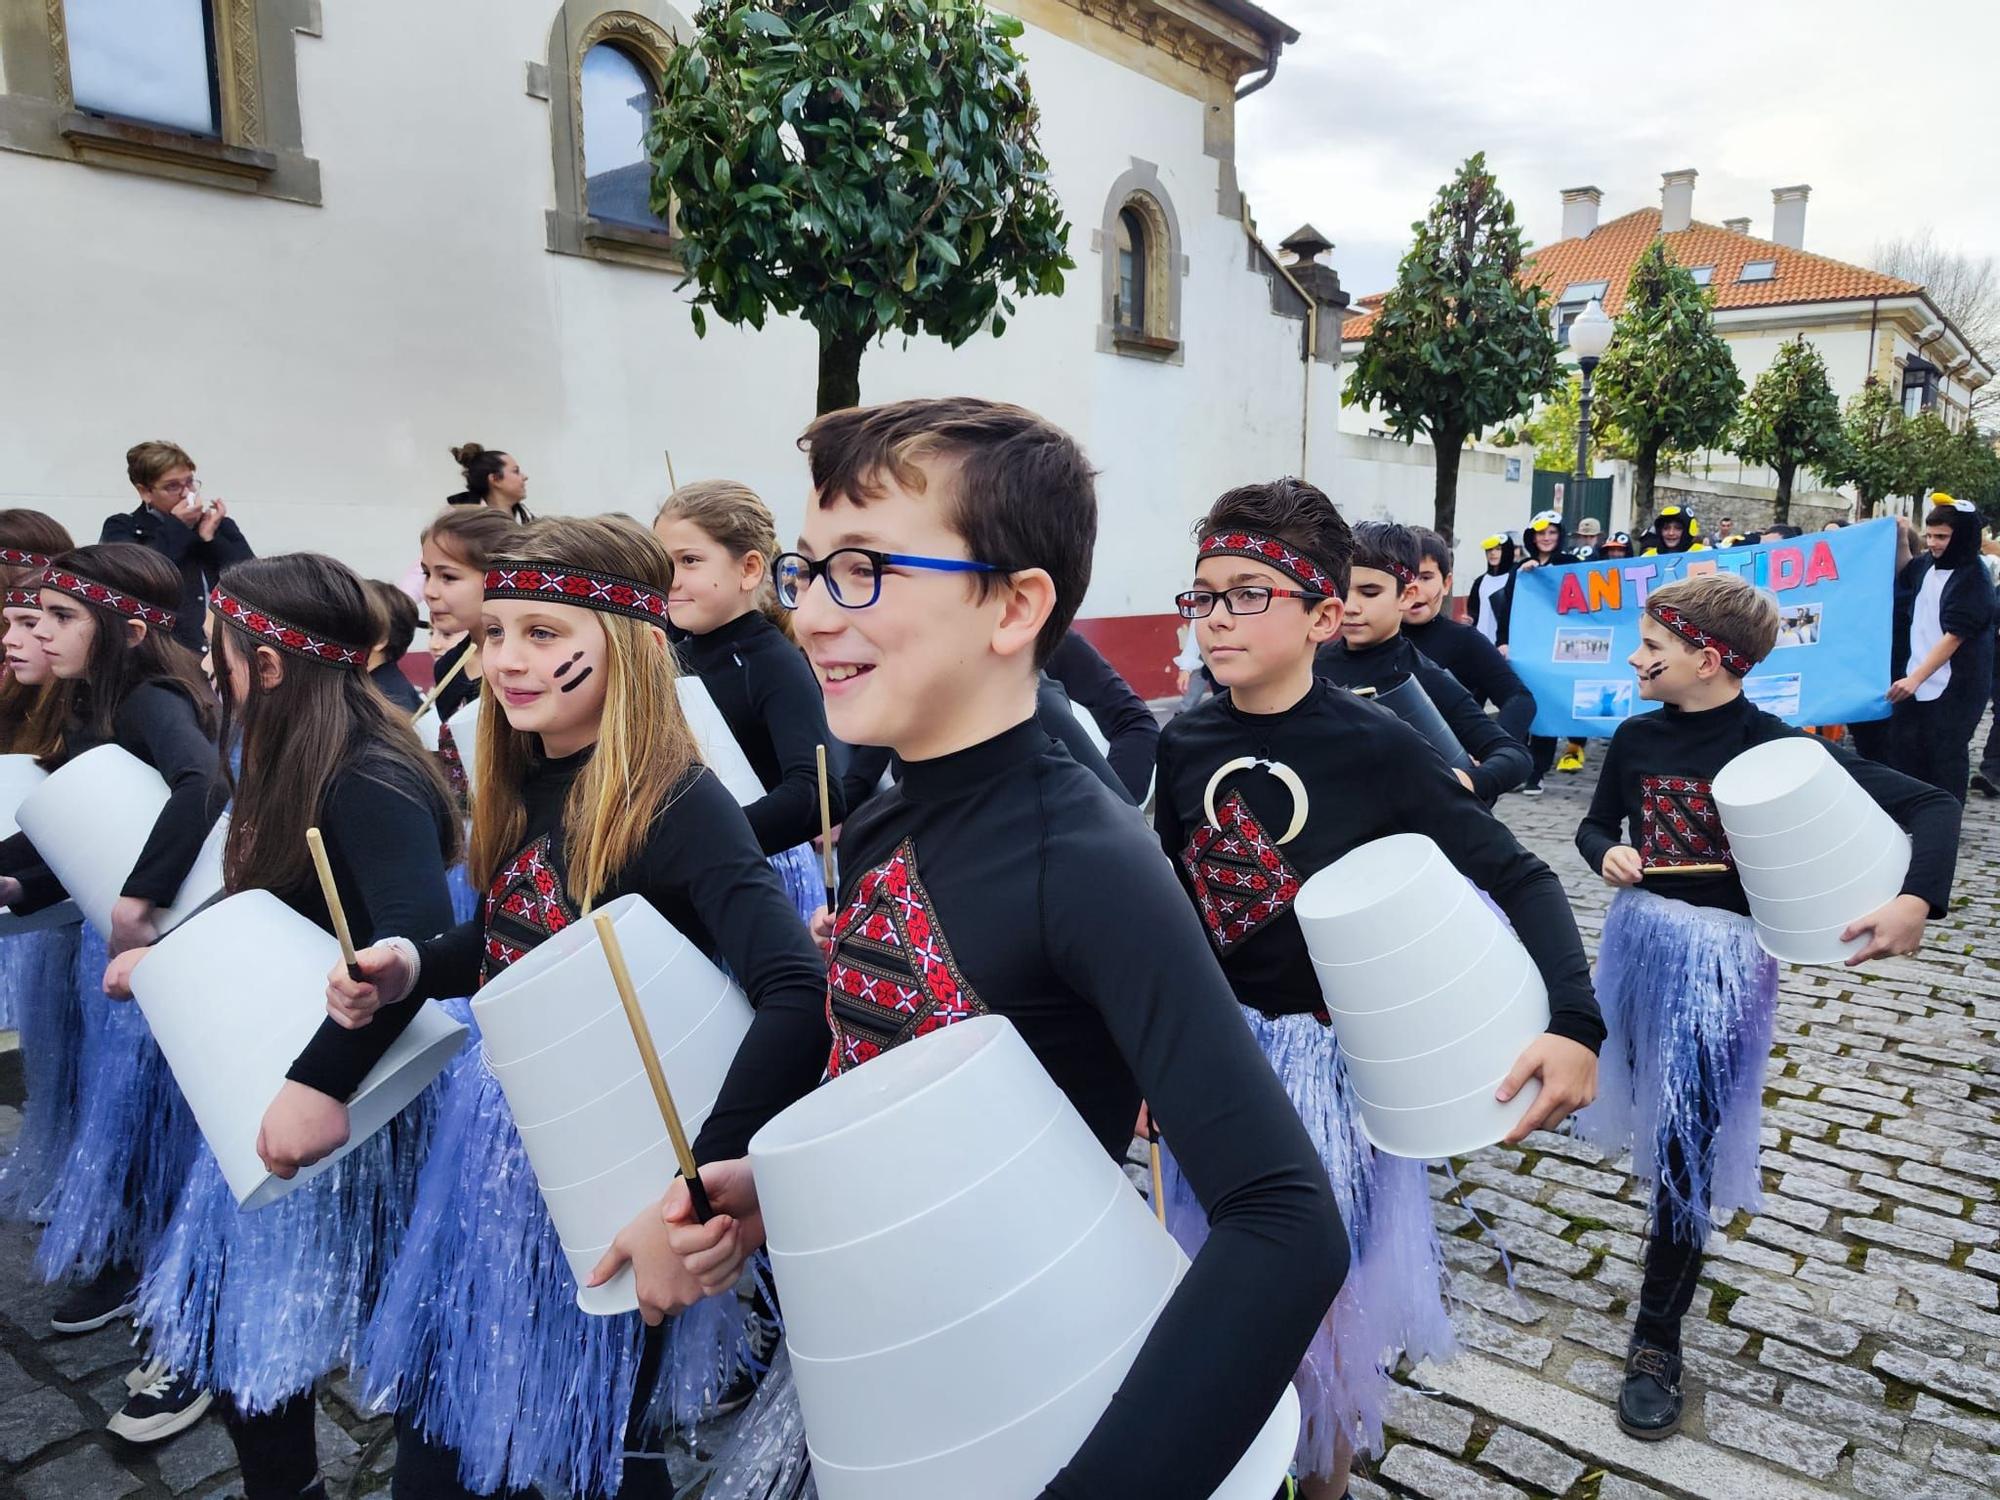 Un viaje por el mundo y a la naturaleza: así han celebrado los colegios de Villaviciosa el carnaval